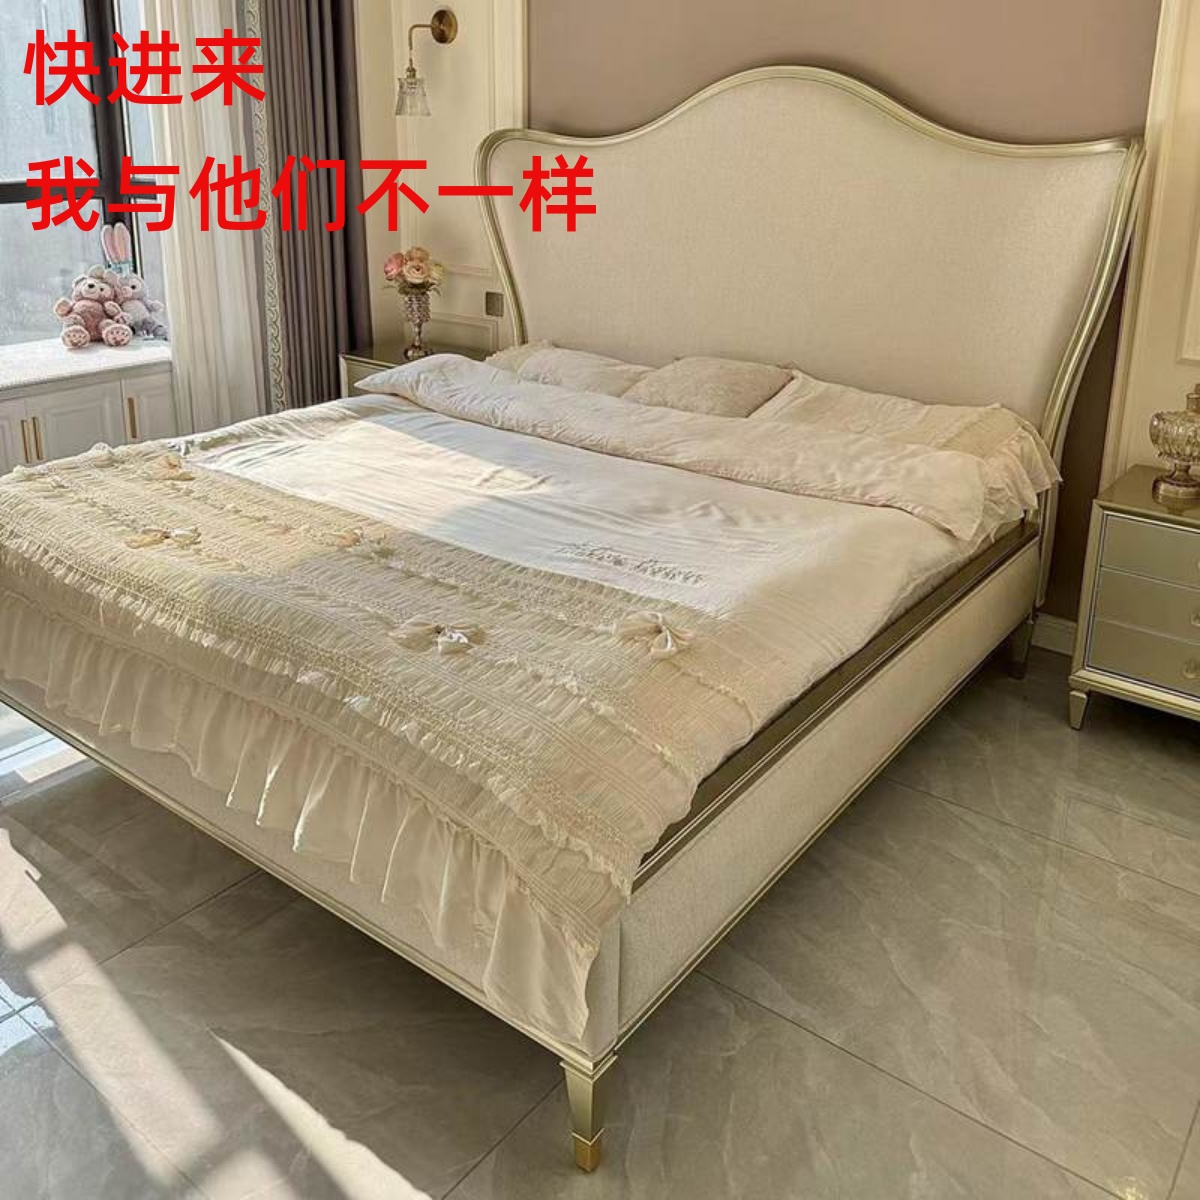 豪派顶配元宝床 美式轻奢全实木床双人床 2米2.2米主卧大床 家具